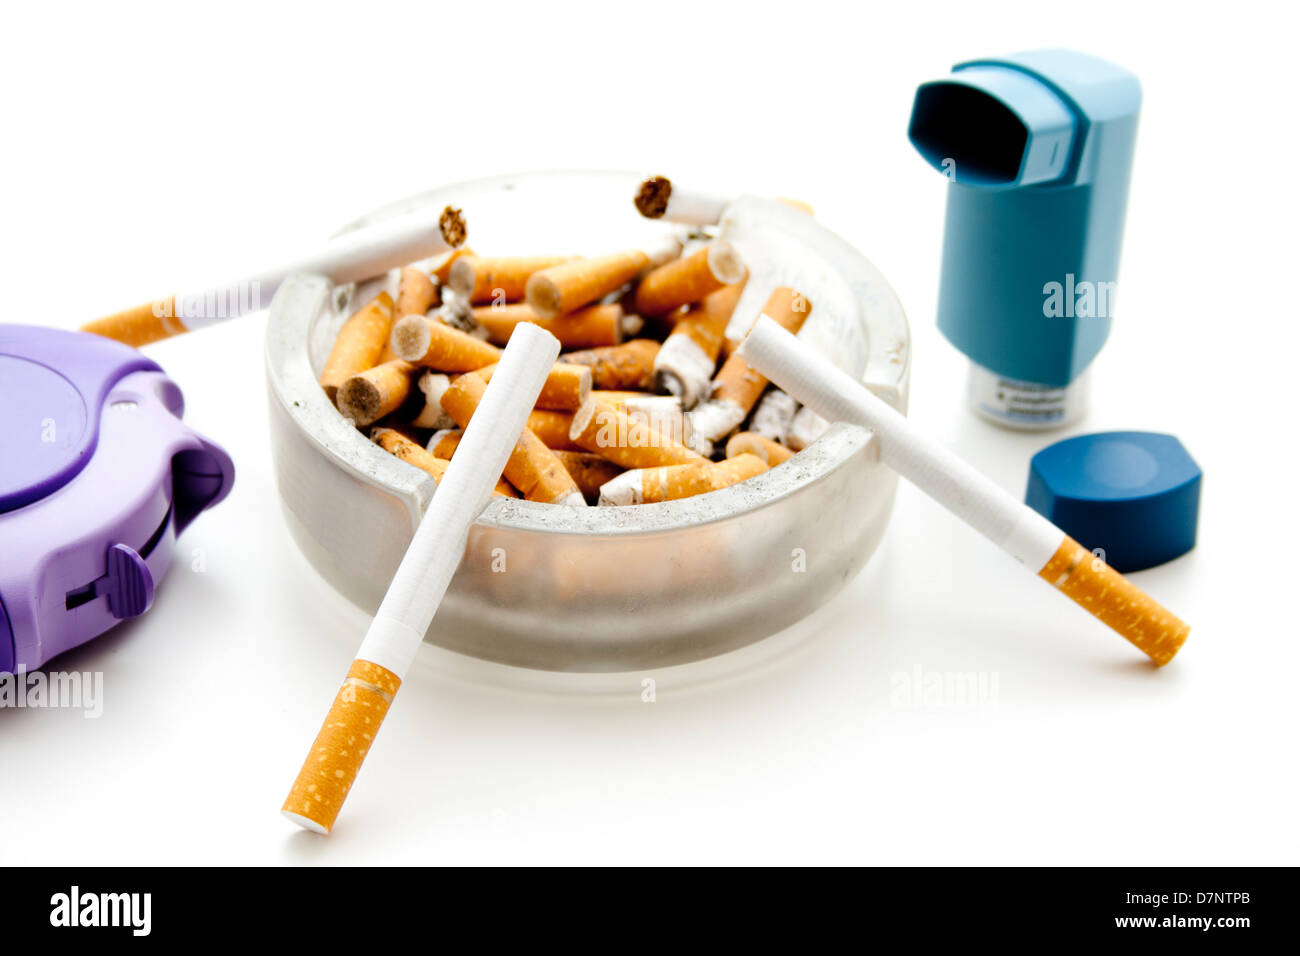 Full ashtray with asthma spray Stock Photo